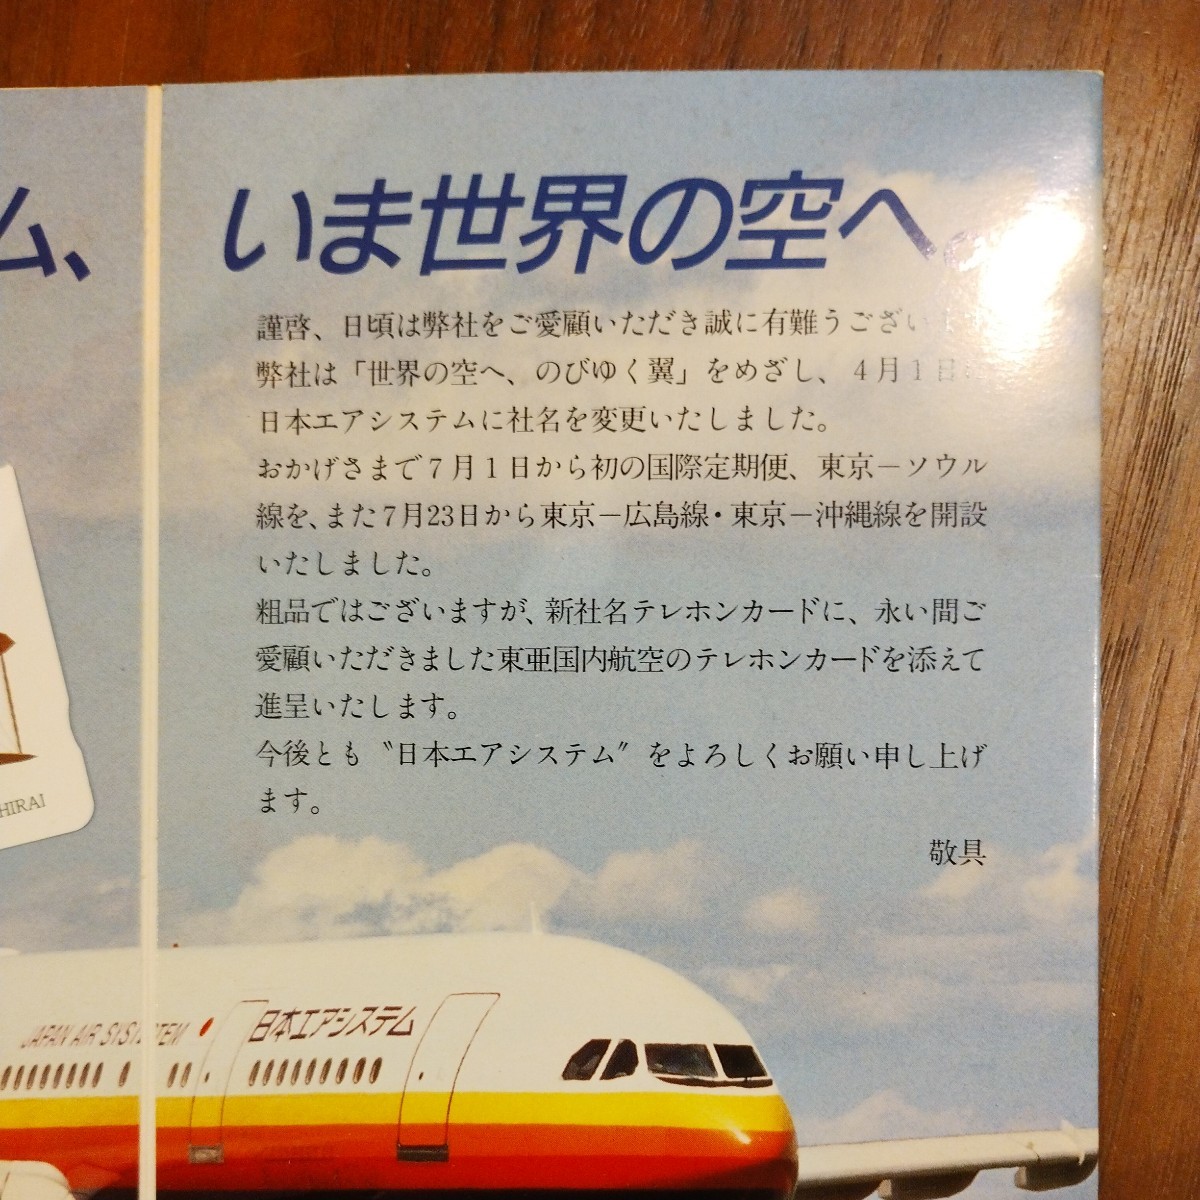  очень редкий! JAS Japan Air System новый название компании память оригинал телефонная карточка 3 шт. комплект не использовался товар оригинал картон имеется старый Logo TDA восток . внутренний авиация 